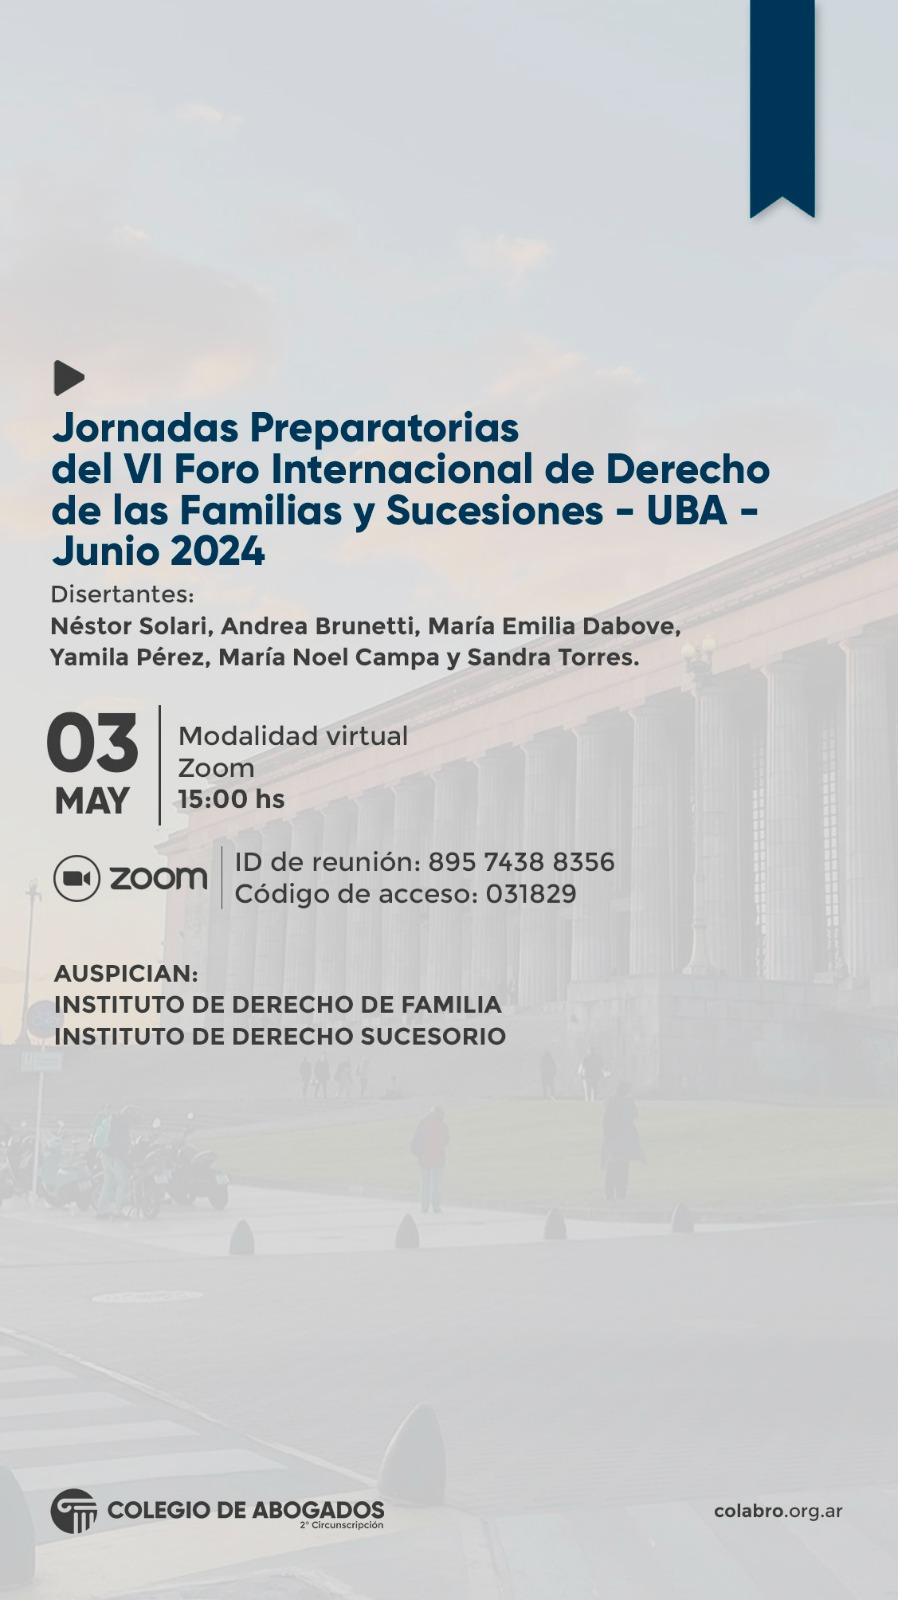 Jornadas Preparatorias del VI Foro Internacional de Derecho de las Familias y Sucesiones - UBA - Junio 2024